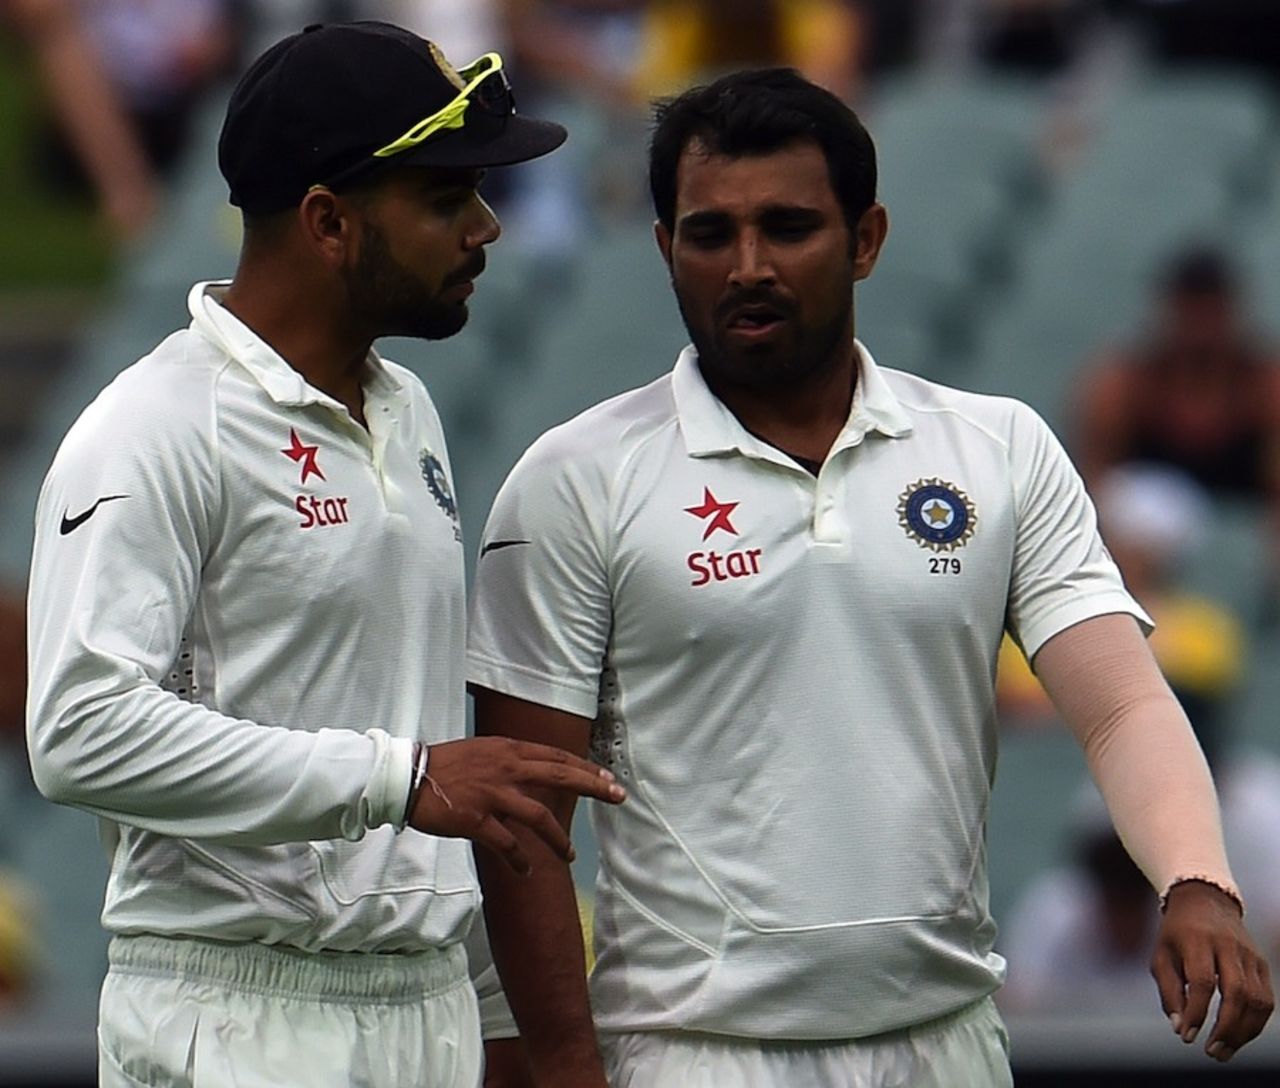 Virat Kohli talks to Mohammed Shami, Australia v India, 1st Test, Adelaide, 2nd day, December 10, 2014